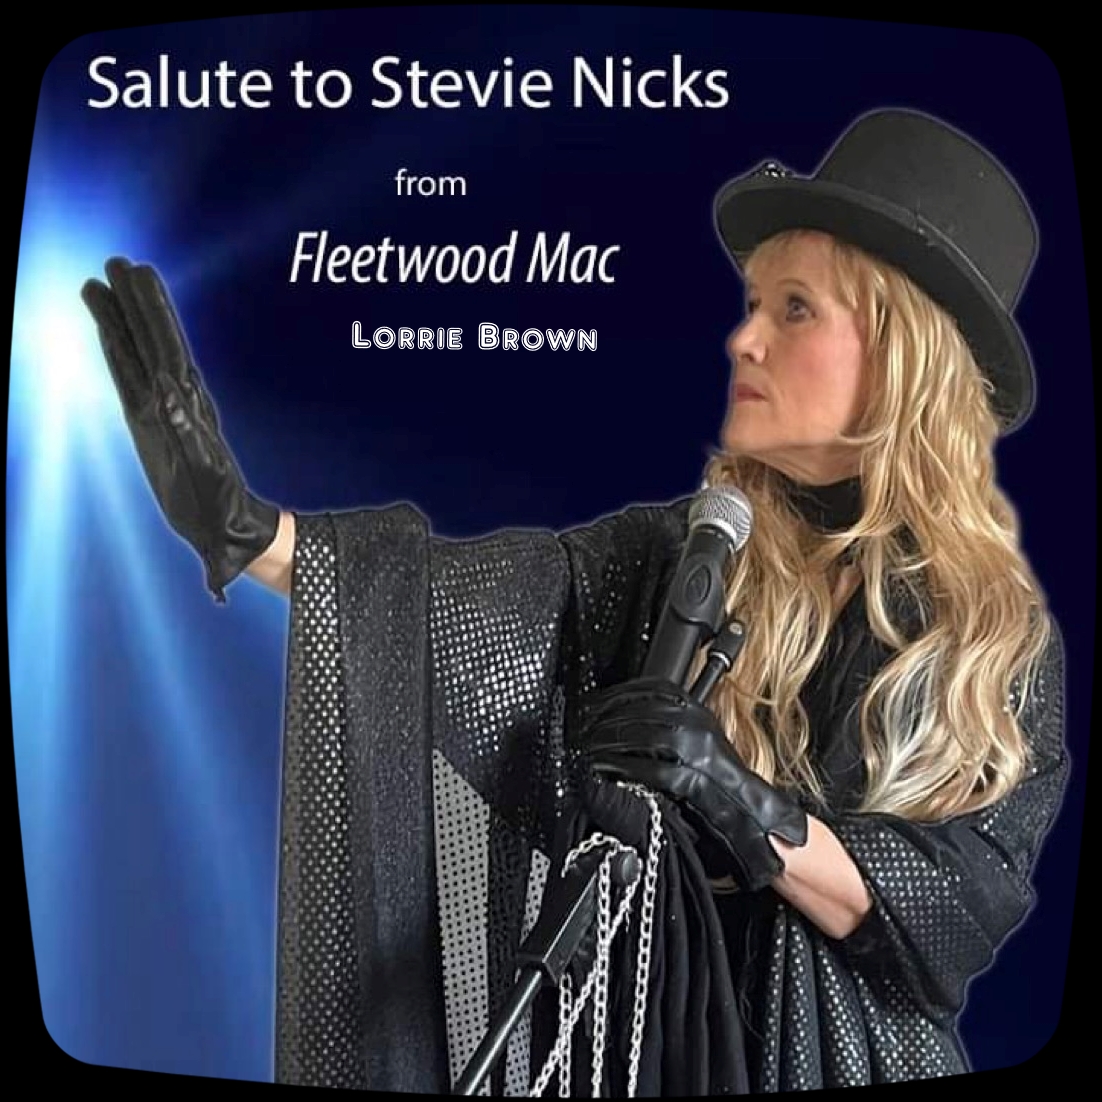 Lorrie Brown as Stevie Nicks of Fleetwood Mac South Yorkshire